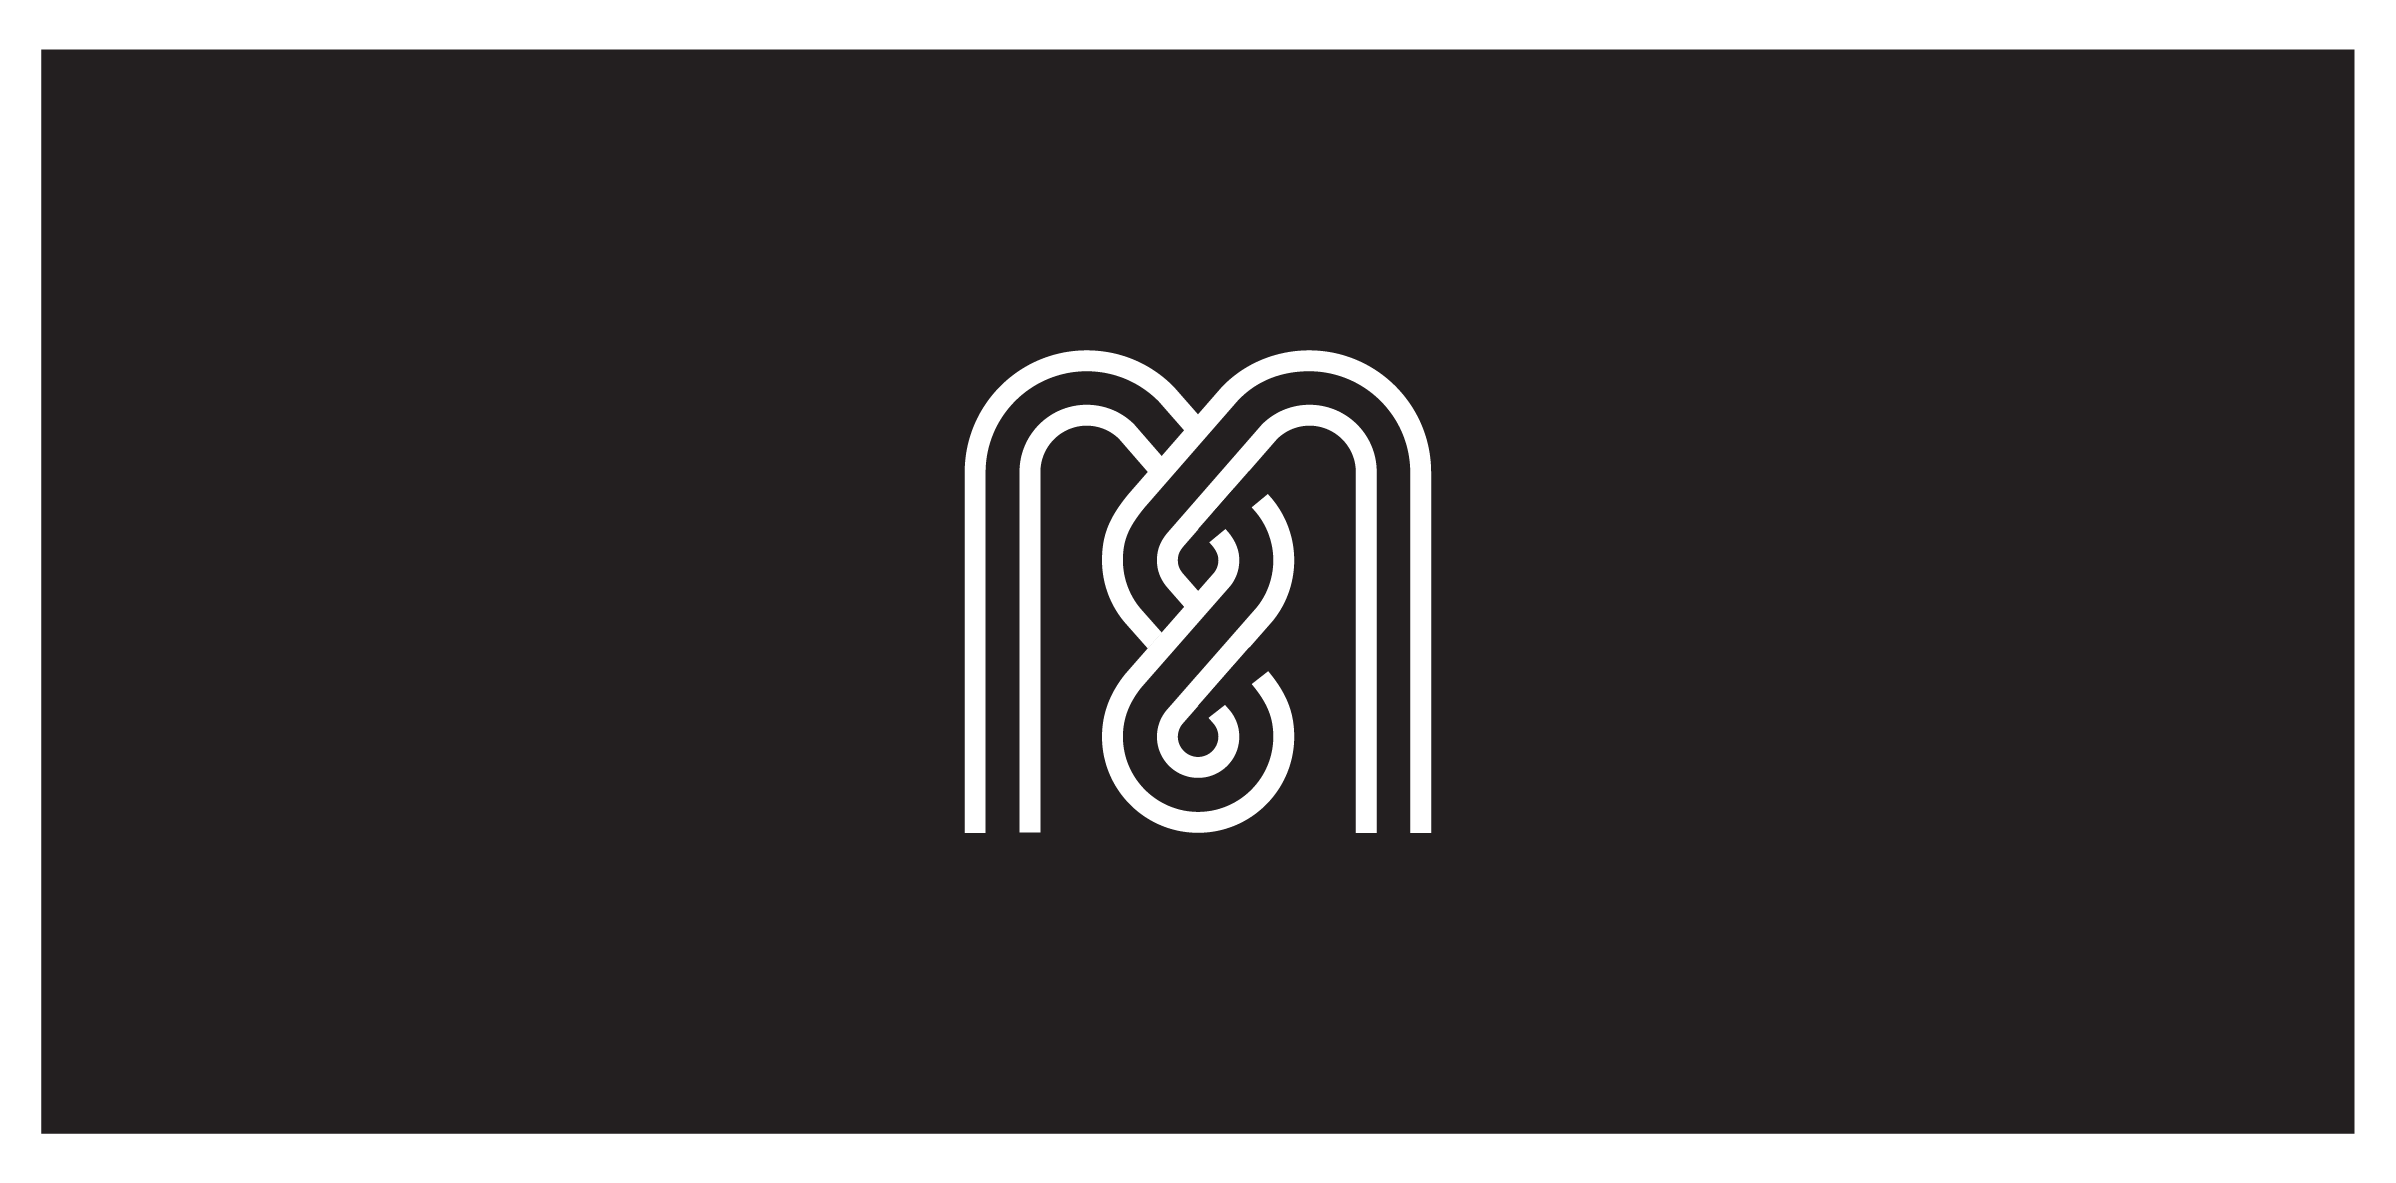 M8 monogram